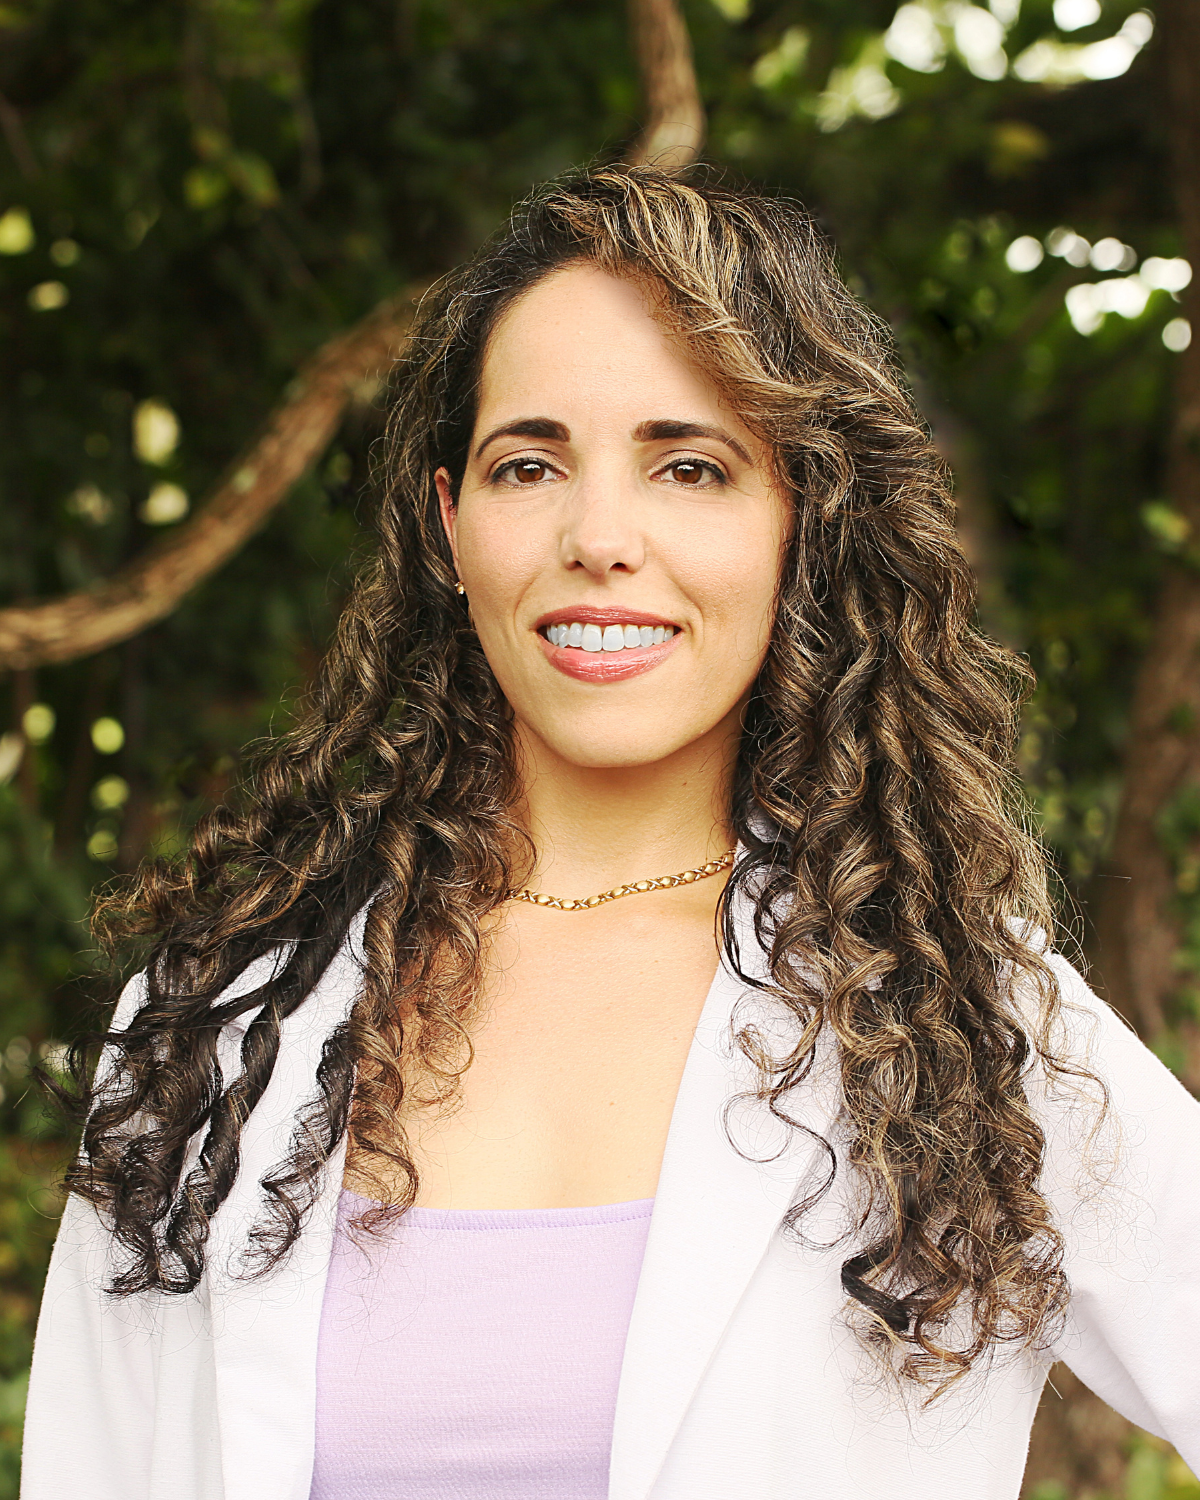 Dr. Lisette Alba